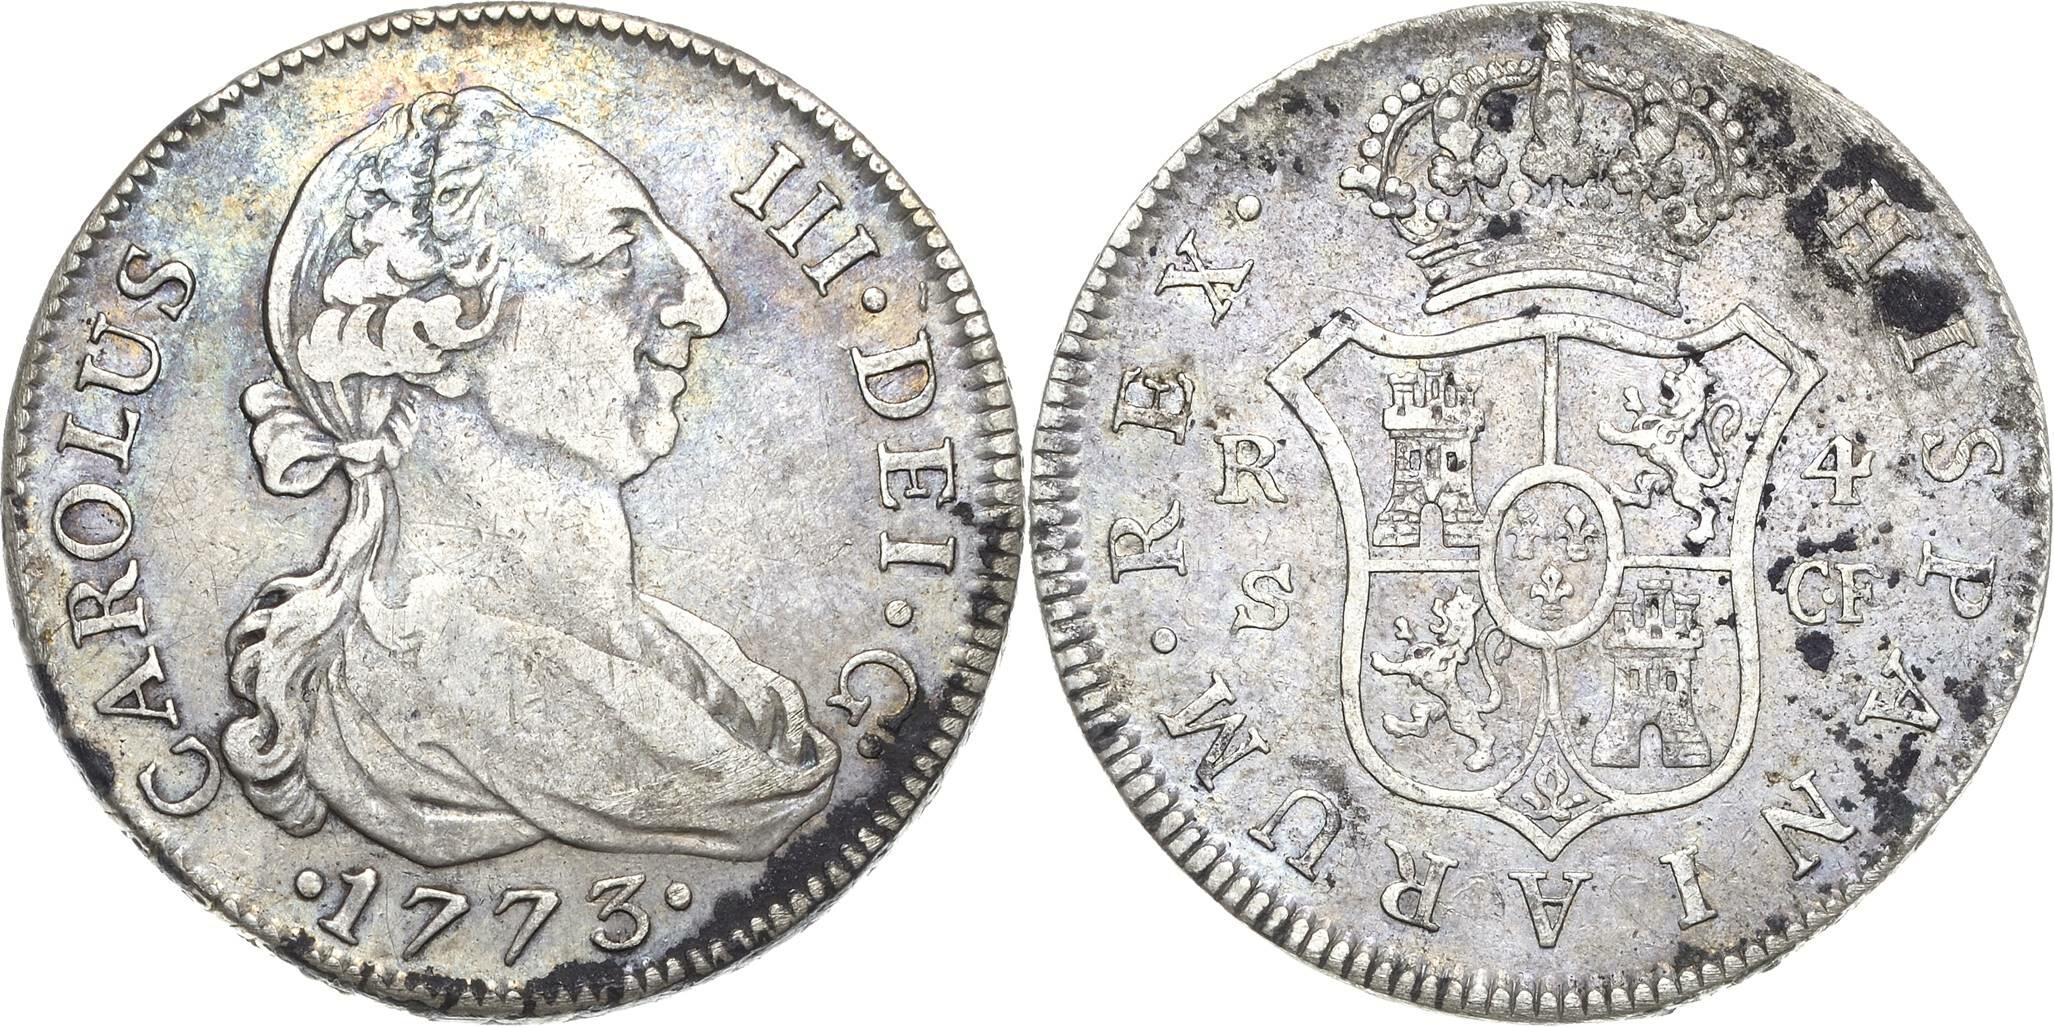 40.500.90: Europa - Spanien - Karl III., 1759 - 1788